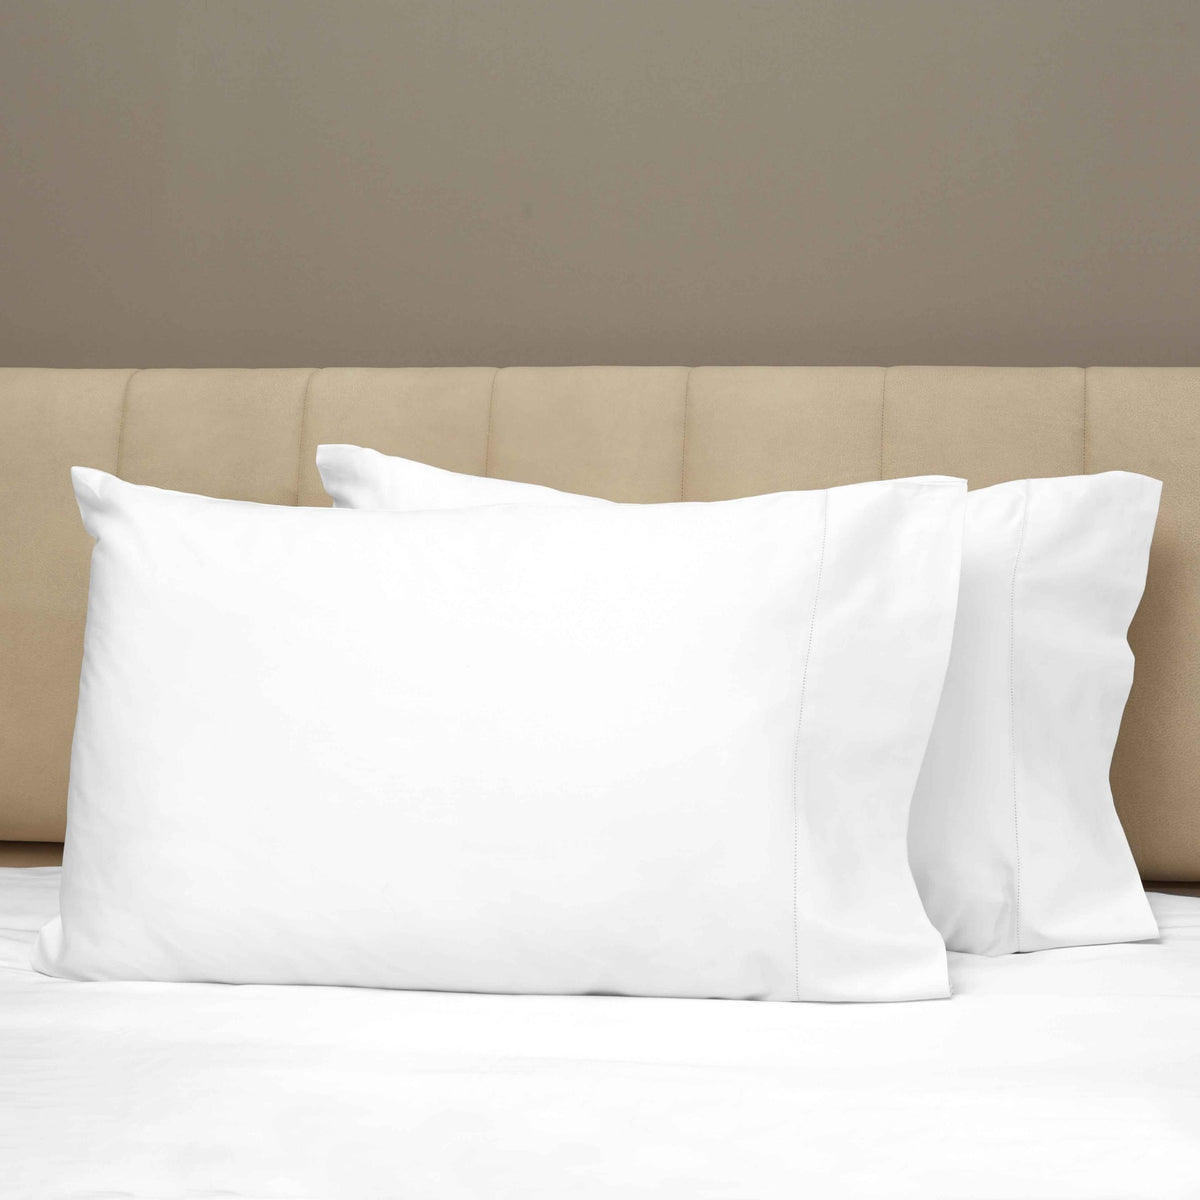 Closeup View of Signoria Raffaello Pillowcases in White Color